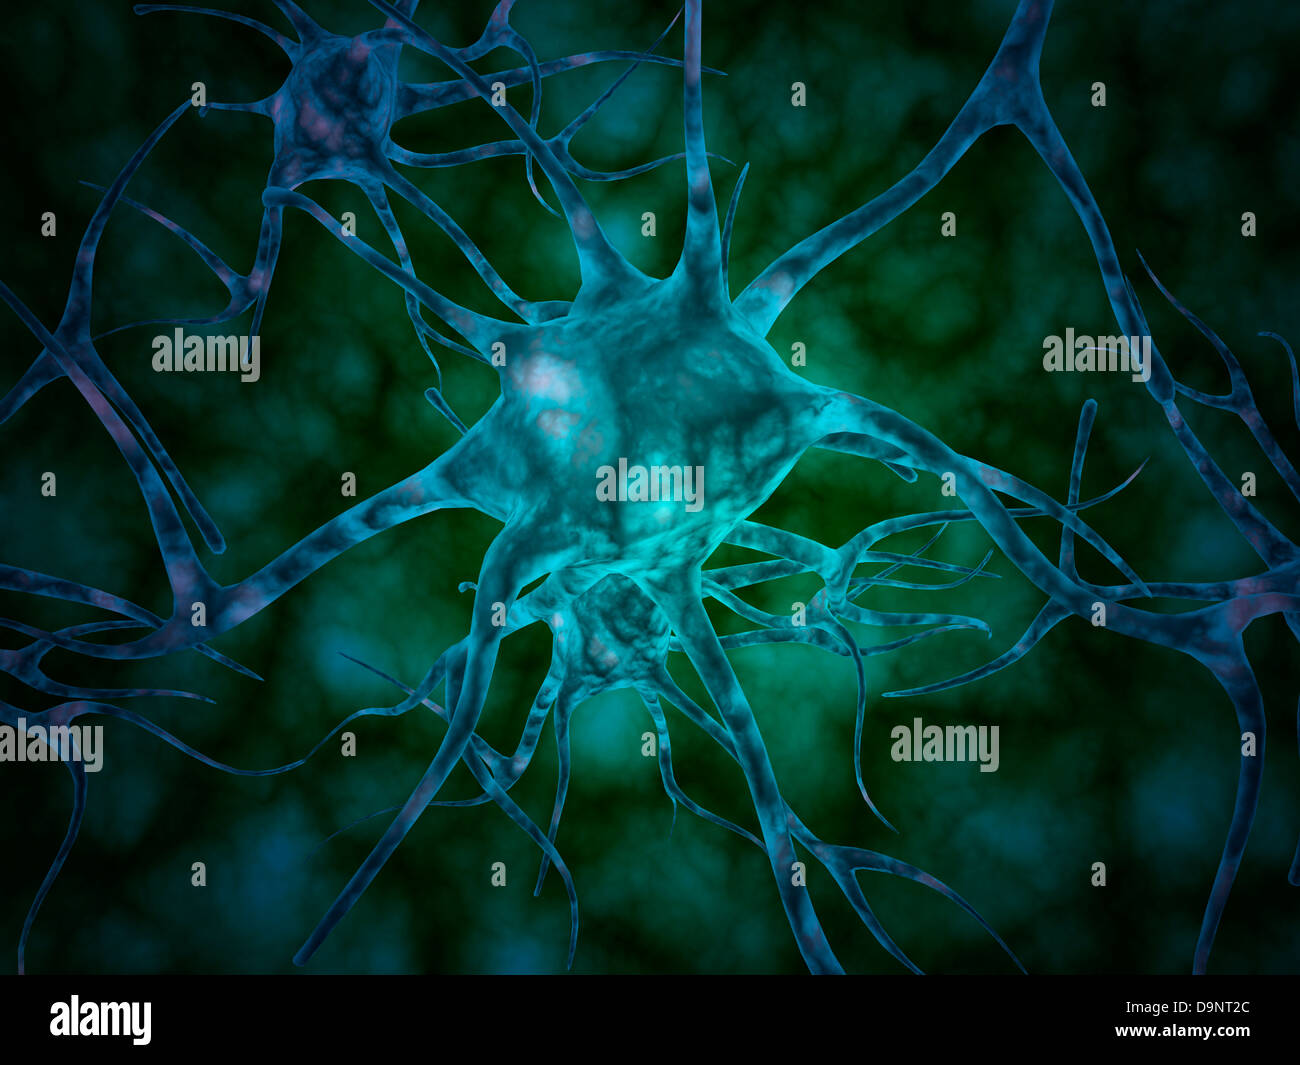 Mikroskopische Ansicht von mehreren Nervenzellen, Neuronen genannt. Stockfoto